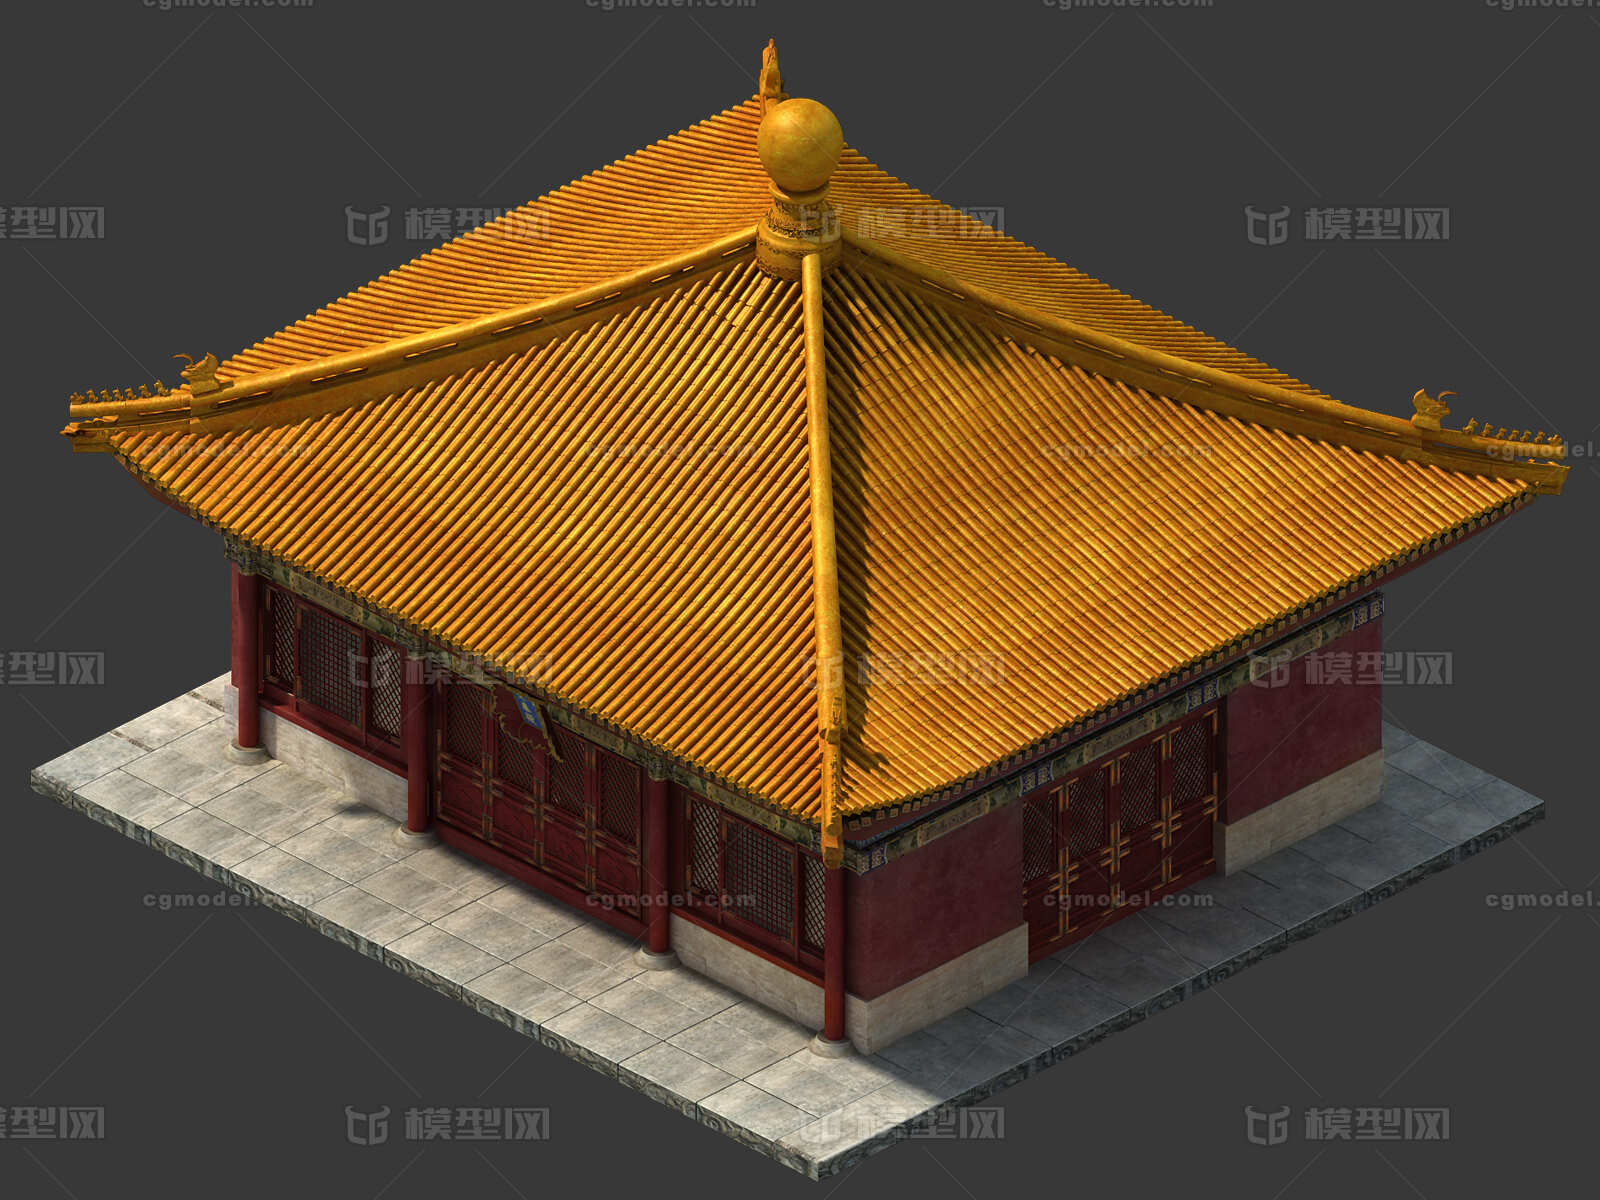 交泰殿,故宫,中国古代建筑,宫殿,天安门